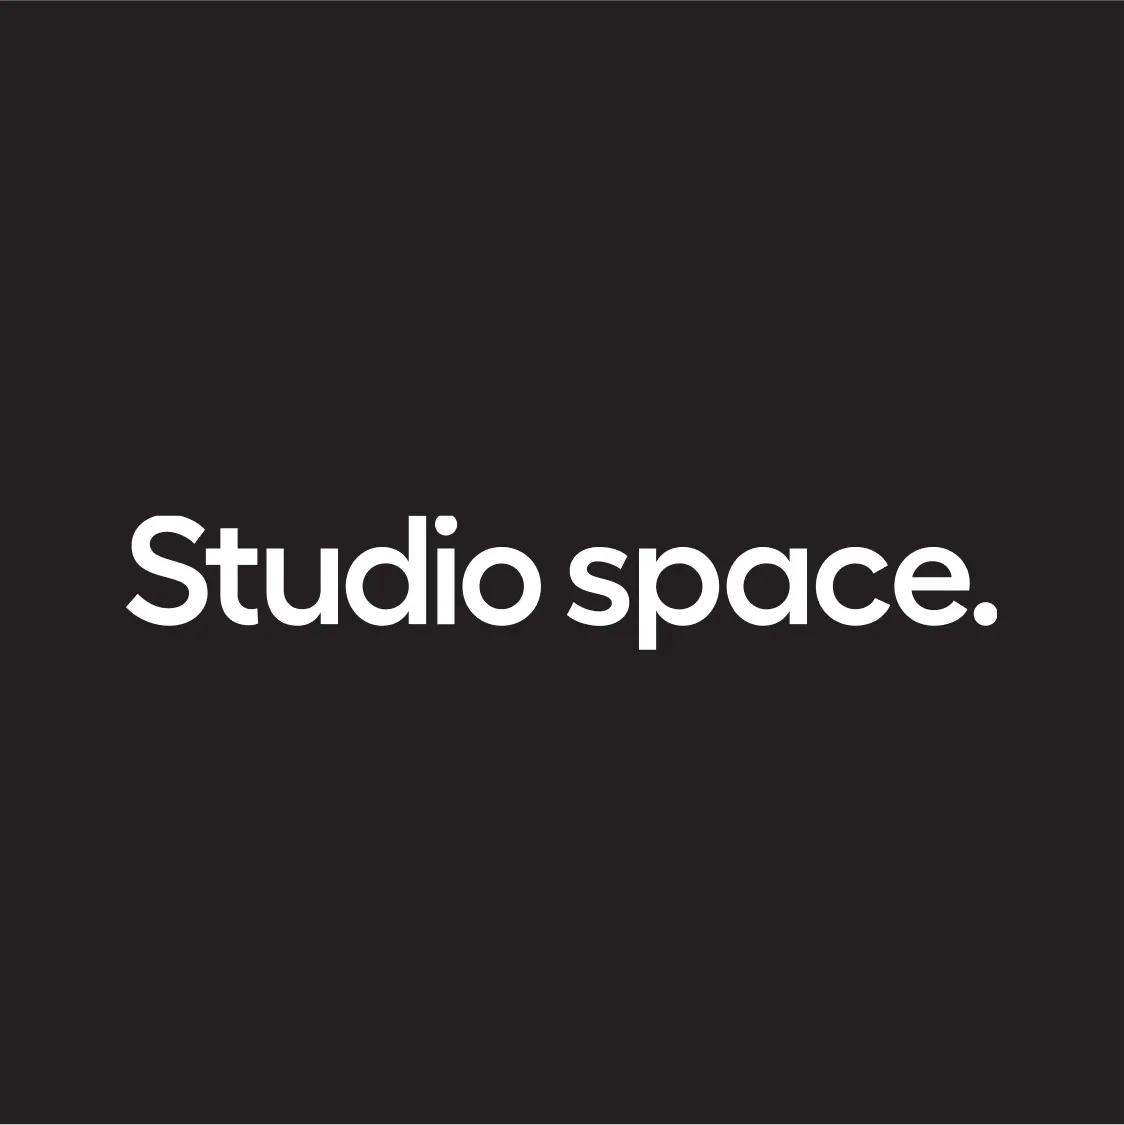 Studio space.